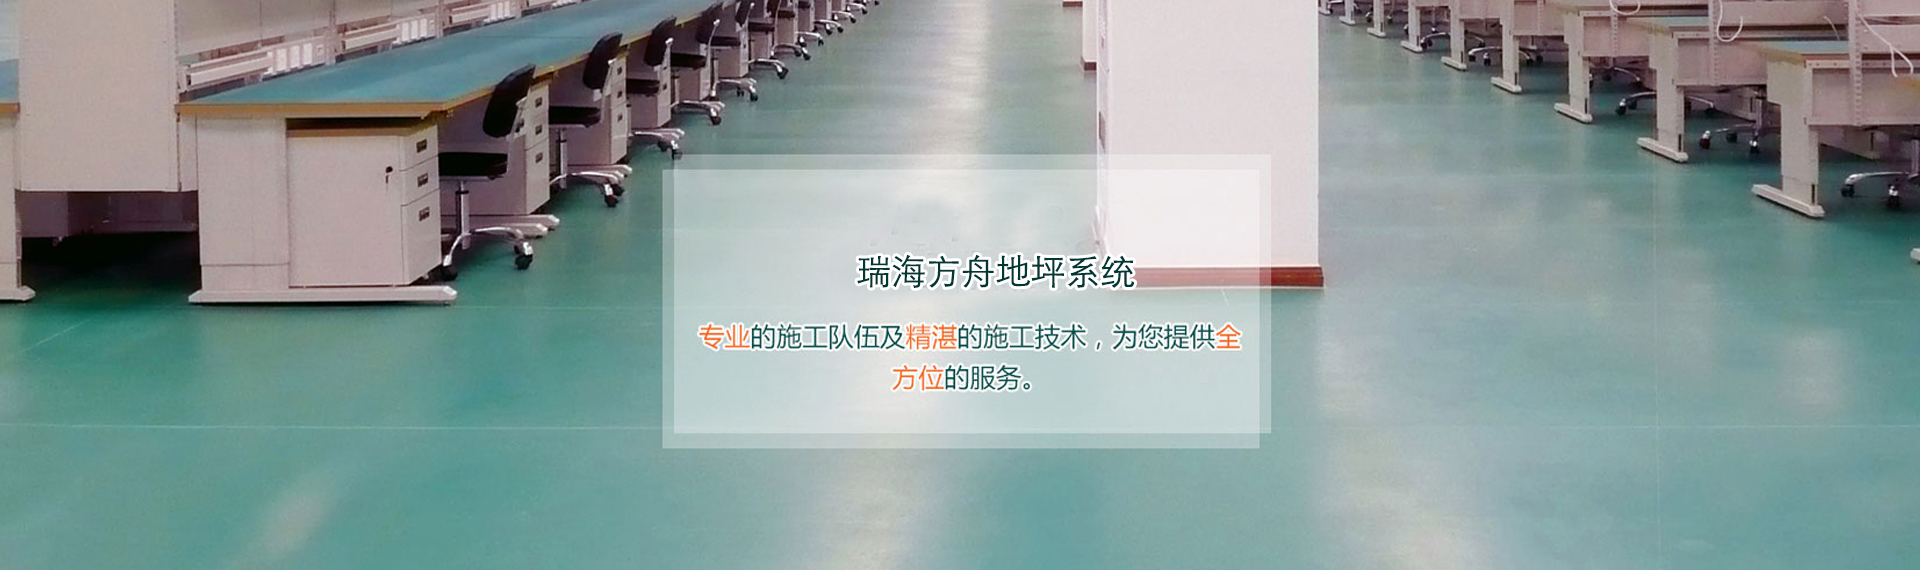 北京瑞海方舟建筑装饰工程有限公司